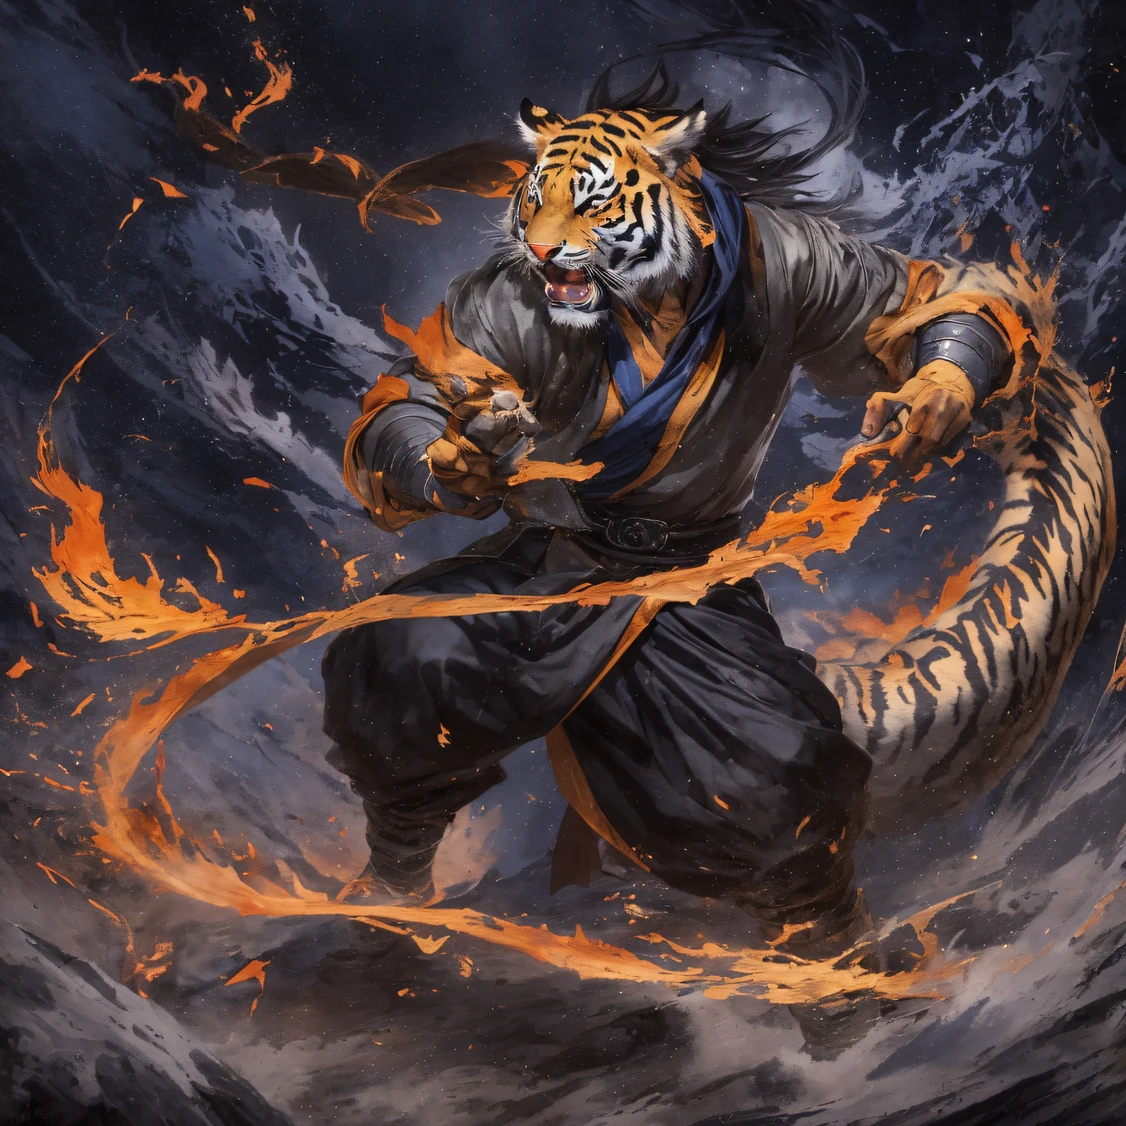 nuit Tiger Demon 32k，Royaume des Démons Immortels Phoenix, Rencontre fortuite avec Liu Hanshu, Il a vu en lui son ancien moi, Il a été décidé de le prendre comme apprenti, Apprenez-lui à se protéger, Mais à cause de la carte des étoiles tibétaines, Phoenix et la famille Liu、La Jade Sword Sect établit des relations, Cela s&#39;ouvre avec la mort de Liu Hanshu, Qin Yu s&#39;est engagé sur la voie de la confrontation avec un ennemi puissant, travailler dur, Rendez-vous plus fort, Restez fidèle à votre propre chemin de justice, （Démon tigre）les yeux remplis de colère，Le varan serra les poings，Accourir，Portez un coup fatal à votre adversaire，corps entieresbienne，Full body nuit Tiger Demon Male Mage 32k（Chef-d&#39;œuvre Canyon Ultra HD）nuit Tiger Demon（canyons）Grimpez dans les rues， La scène de l&#39;explosion（canyons）， （nuit）， The angry fighting stance of the nuit Tiger Demon， en regardant le sol， Bandana en lin batik， Vêtement manches longues motif python chinois， canyons（Éclaboussure abstraite de propylène：1.2）， Fond de foudre de nuages sombres，La farine vole（de manière réaliste：1.4），Cheveux de couleur noire，Farine flottant，fond arc en ciel， Une haute résolution， le détail， Photo RAW， Sharp Re， Nikon D850 Film Photo de Jefferies Lee 4 Appareil photo Kodak Portra 400 F1.6 coups, couleurs riches, textures vives ultra réalistes, éclairage dramatique, Tendance de la station artistique Unreal Engine, Cinestir 800，cheveux noirs flottants,（（（Canyon de la jungle）））Les blessés alignés dans les rues（D&#39;ACCORD）Grimpez dans la qualité d&#39;image en temps réel du maître du streetovie（chef-d&#39;œuvre，k hd，hyper HD，32k）nuit Tiger Demon（Écharpe batik en lin）， position de combat， en regardant le sol， Bandana en lin， Vêtements à manches longues à motif de démon tigre de nuit chinois，nuit Tiger Demon（Éclaboussure de gouache abstraite：1.2）， Fond de foudre de nuages sombres，saupoudrage